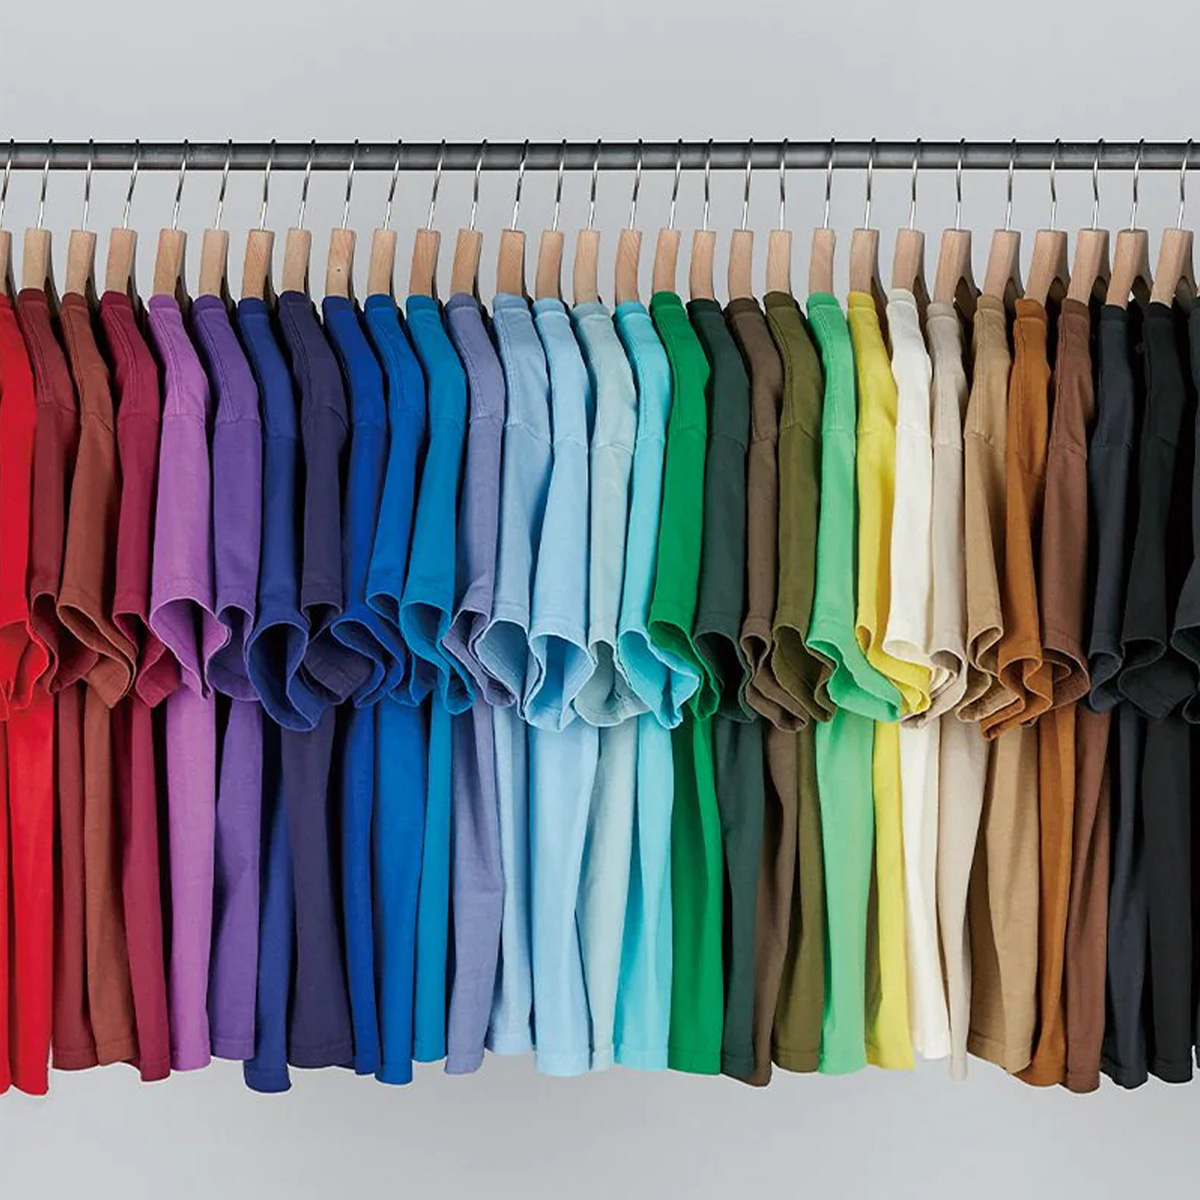 GOAT ゴート Tシャツ 幅広く選べるサイズとカラー展開